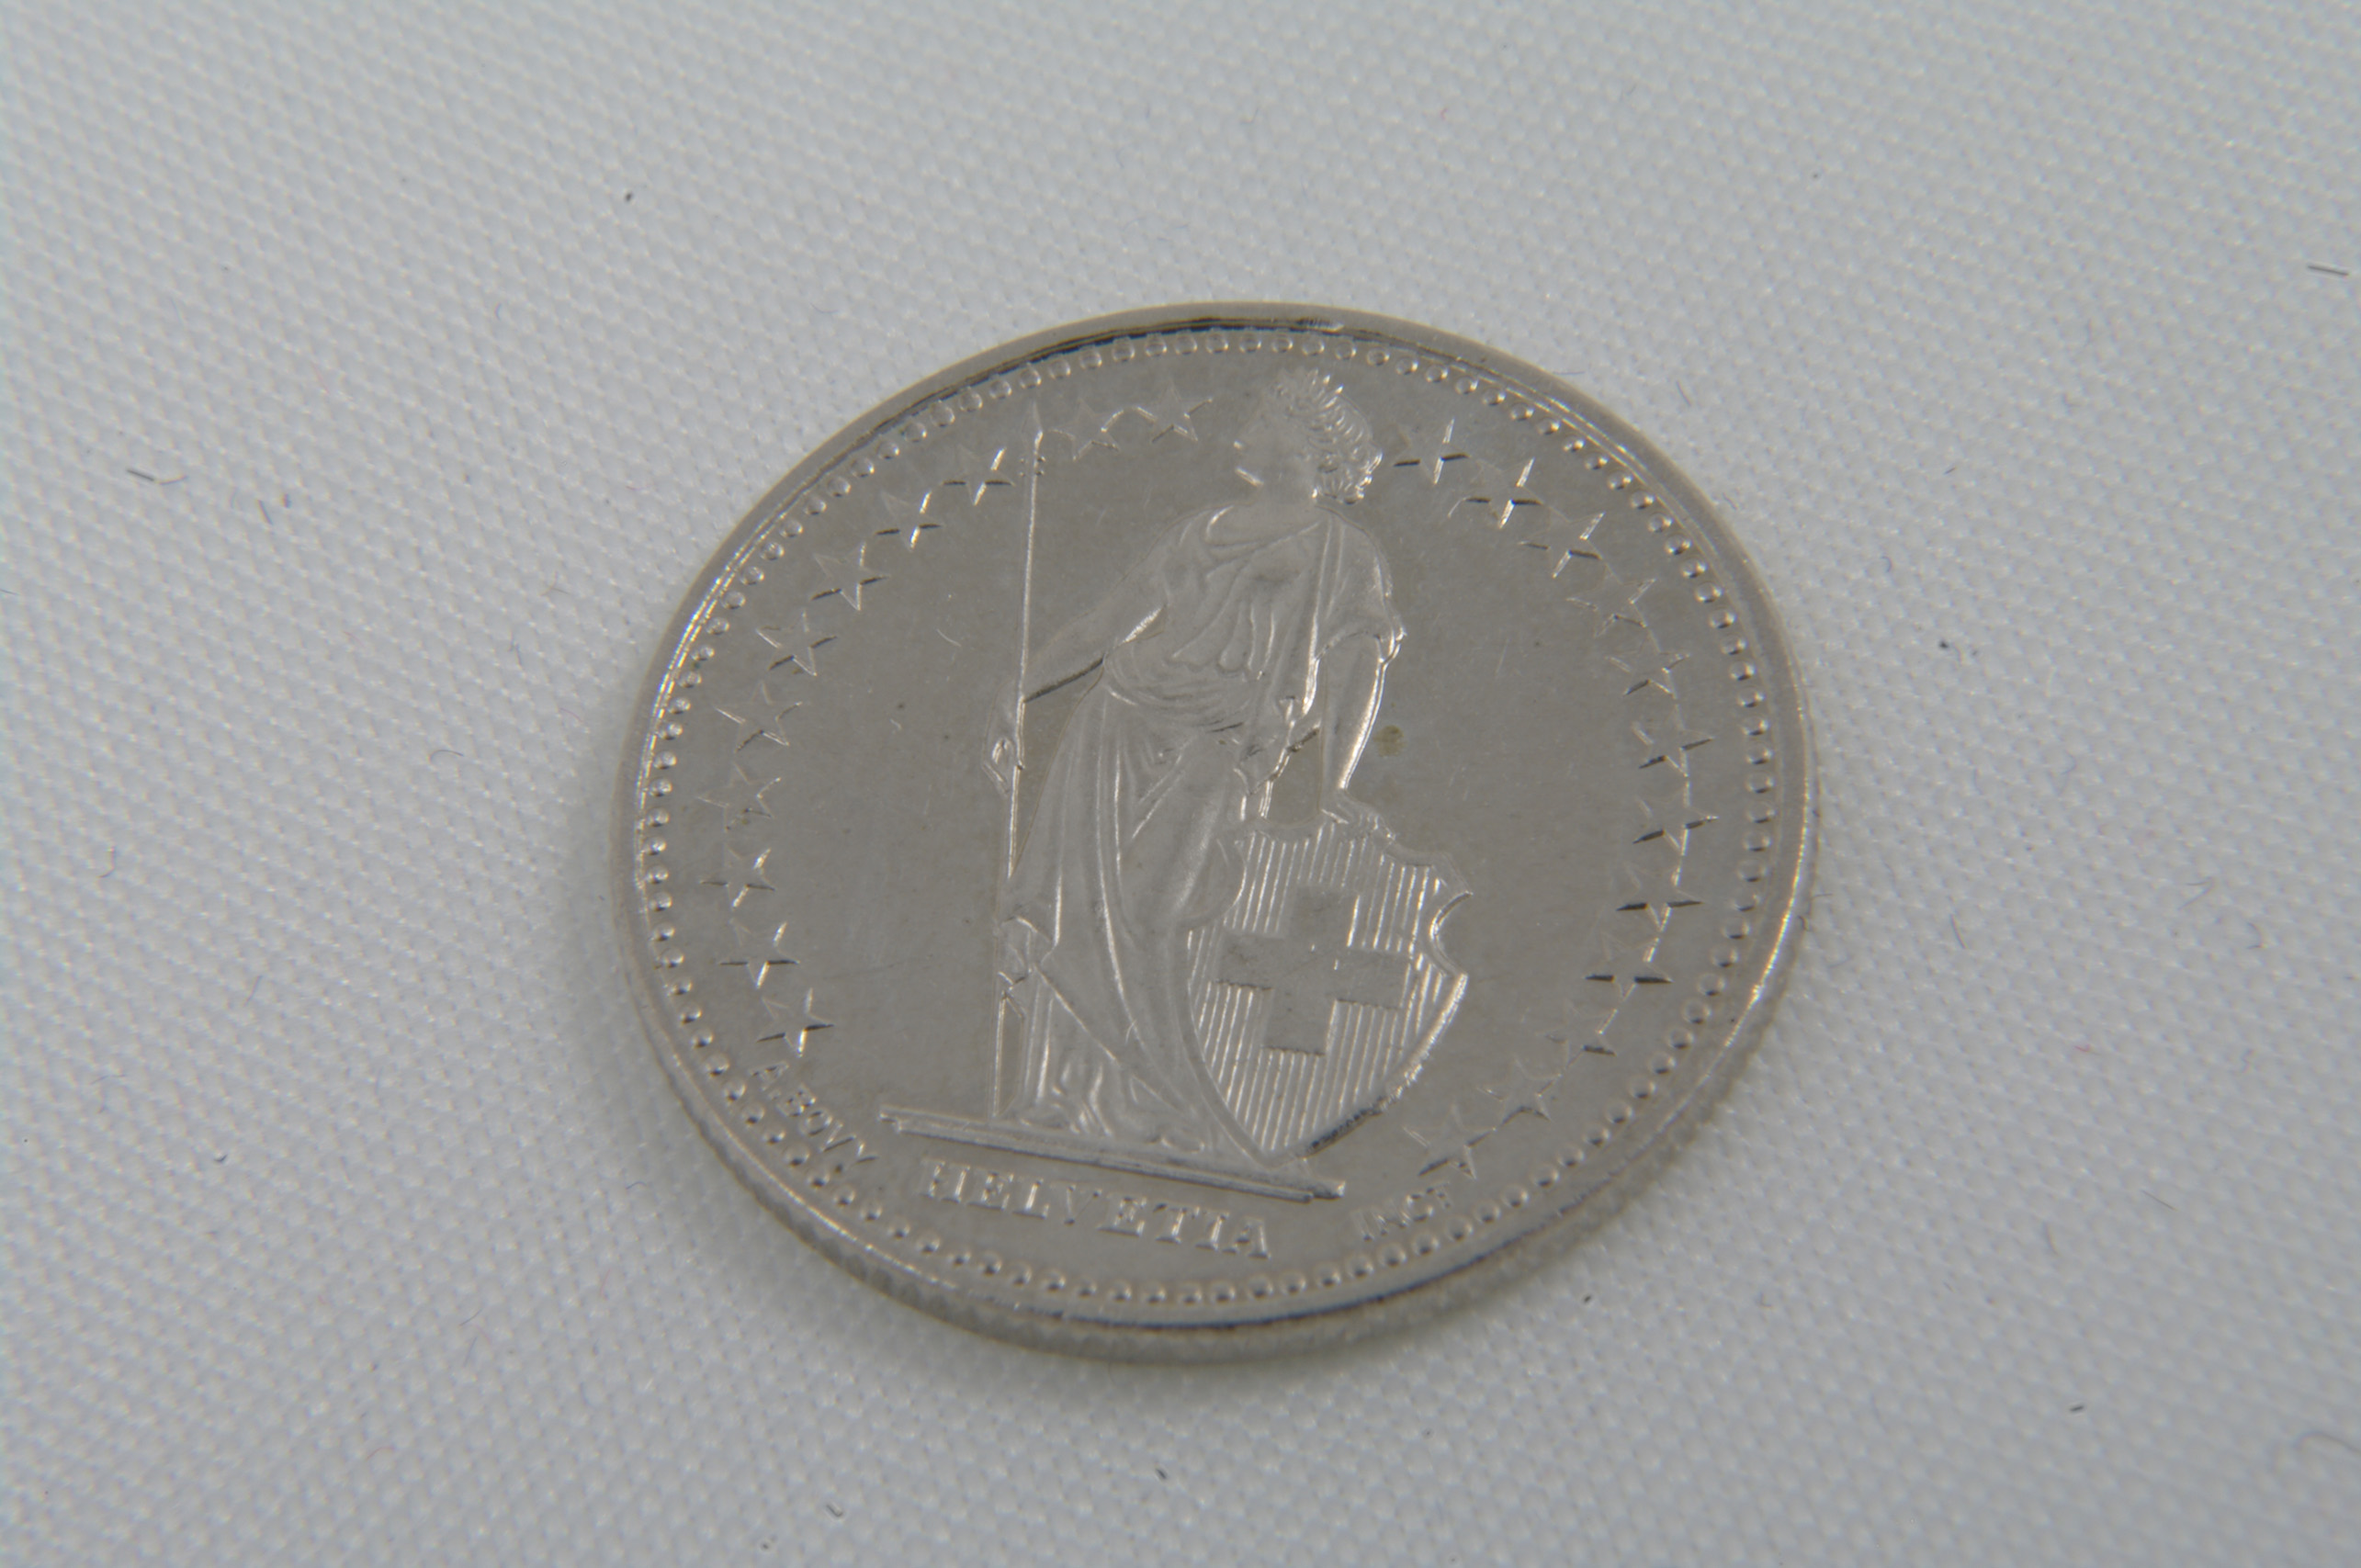 Coins CHF switzerland, Argent, Chf, Coin, Money, HQ Photo